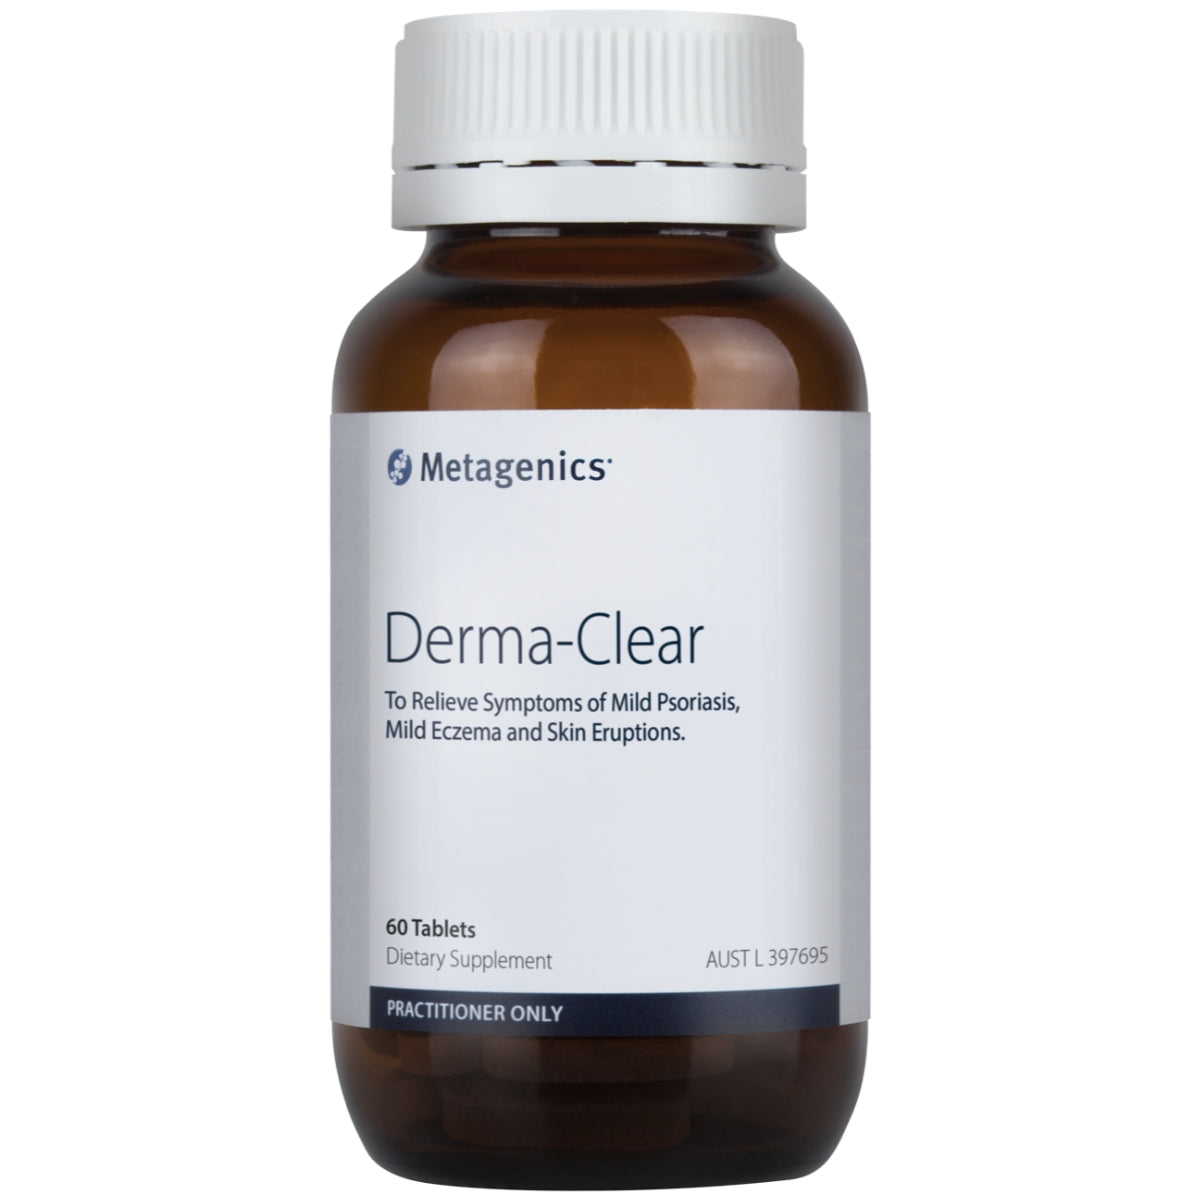 Metagenics Derma-Clear